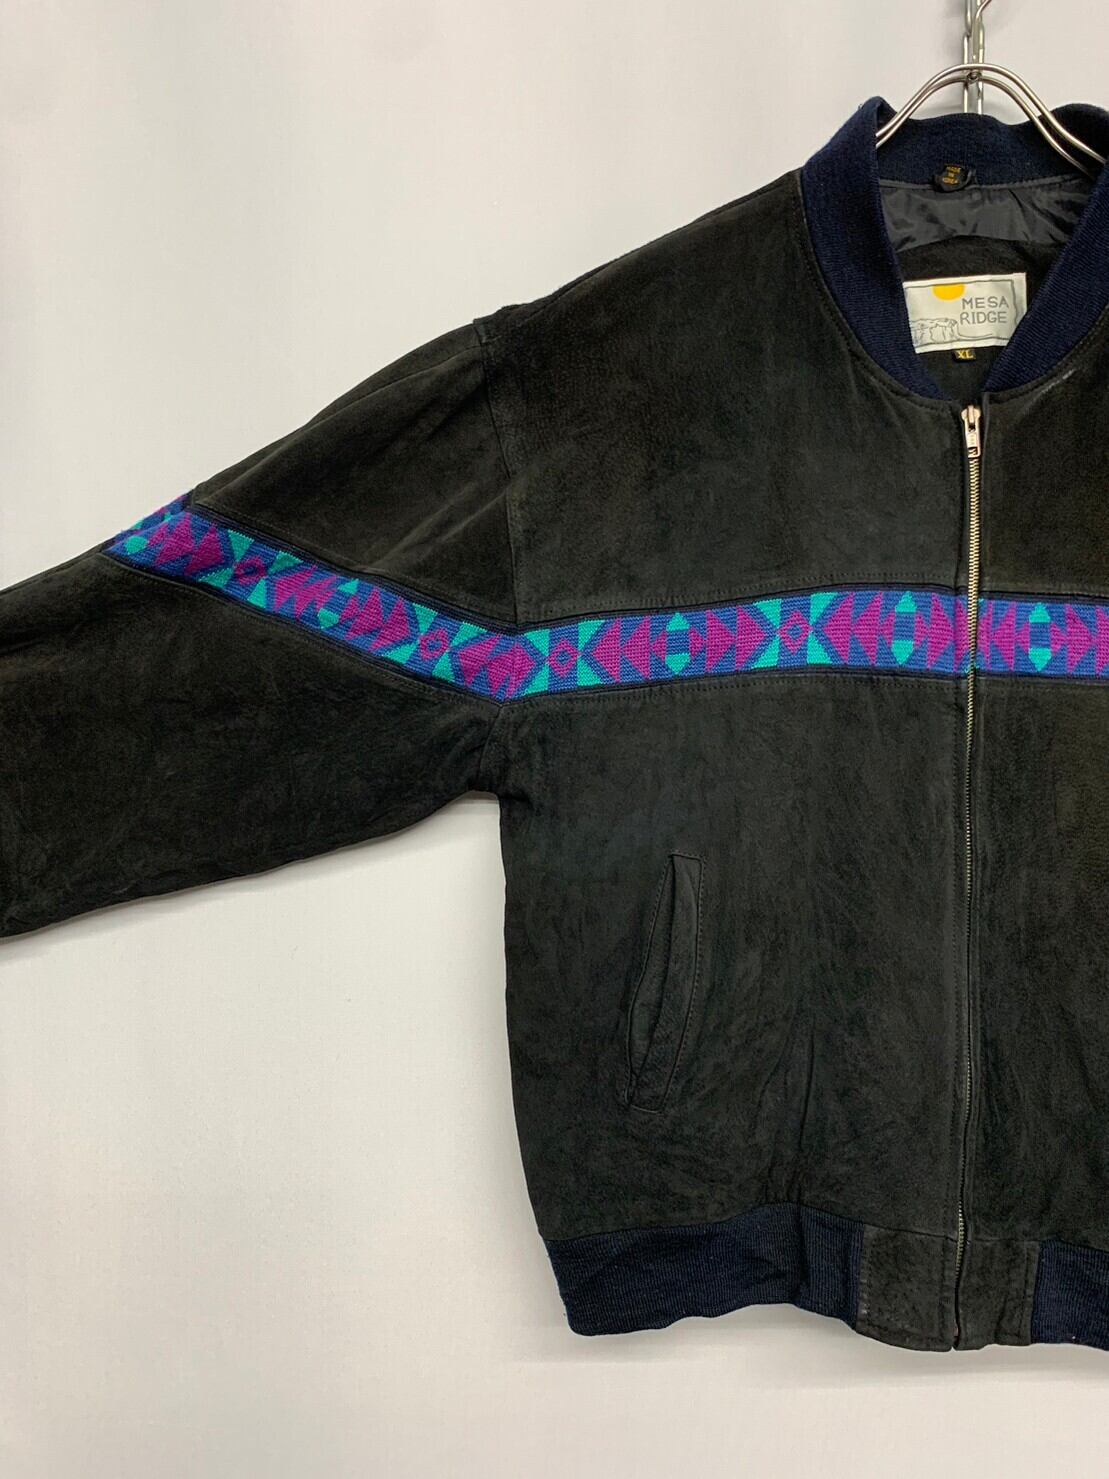 MESA RIDGE” Native Line Leather Jacket | RENGA CLOTHING STORE